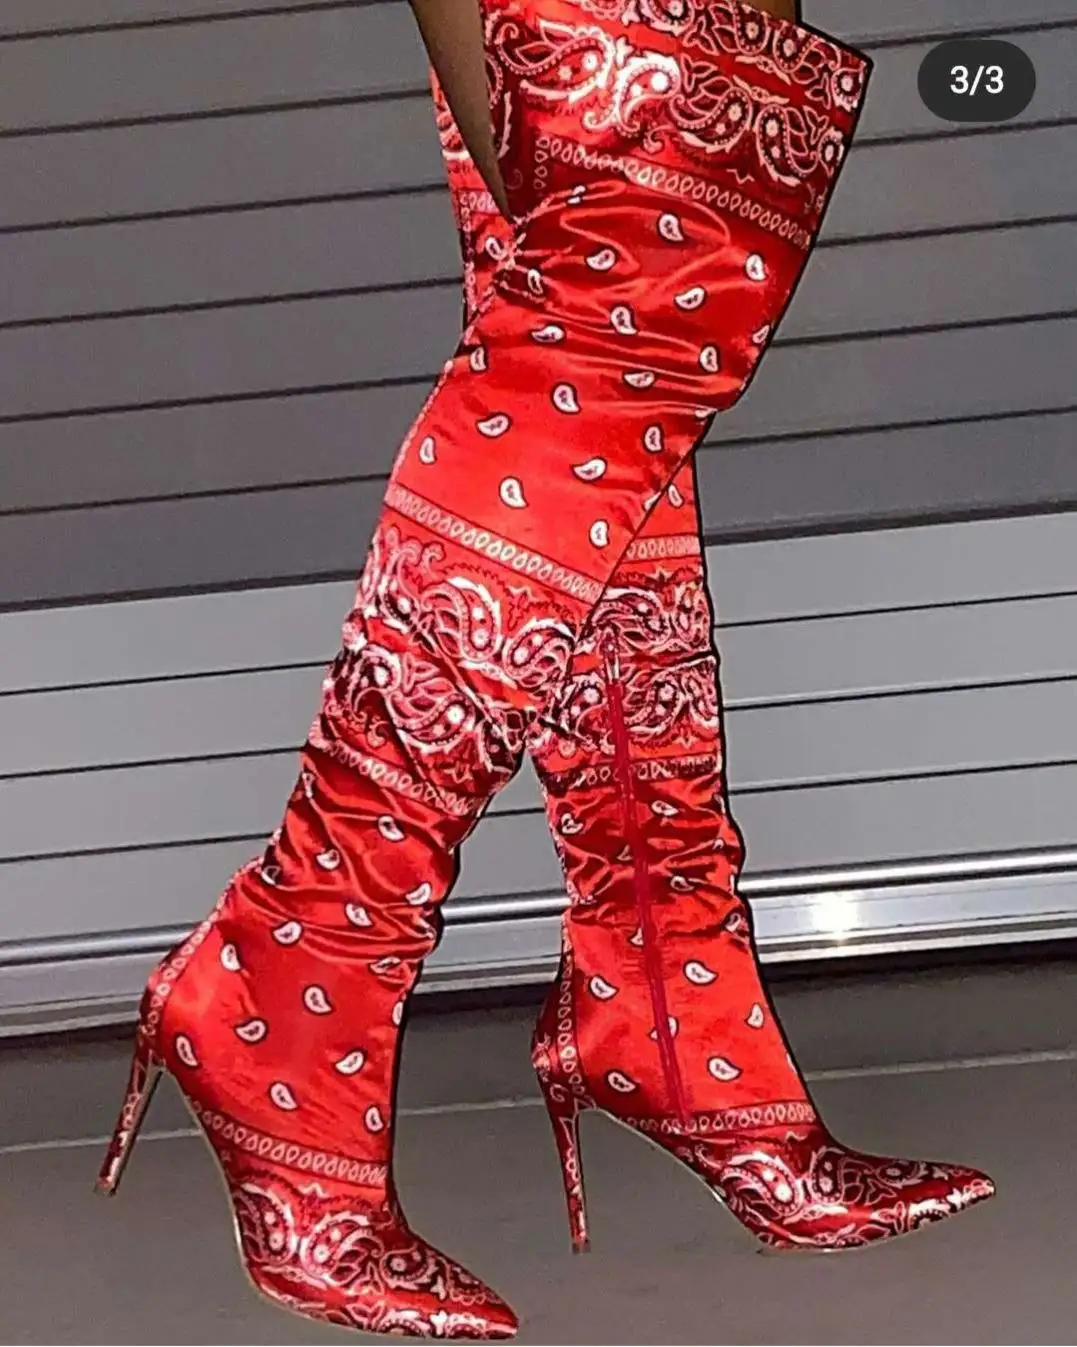 Moda yeni stil kaju çiçek saten seksi stiletto çizmeler kadınlar için diz yüksek çizmeler kışlık botlar